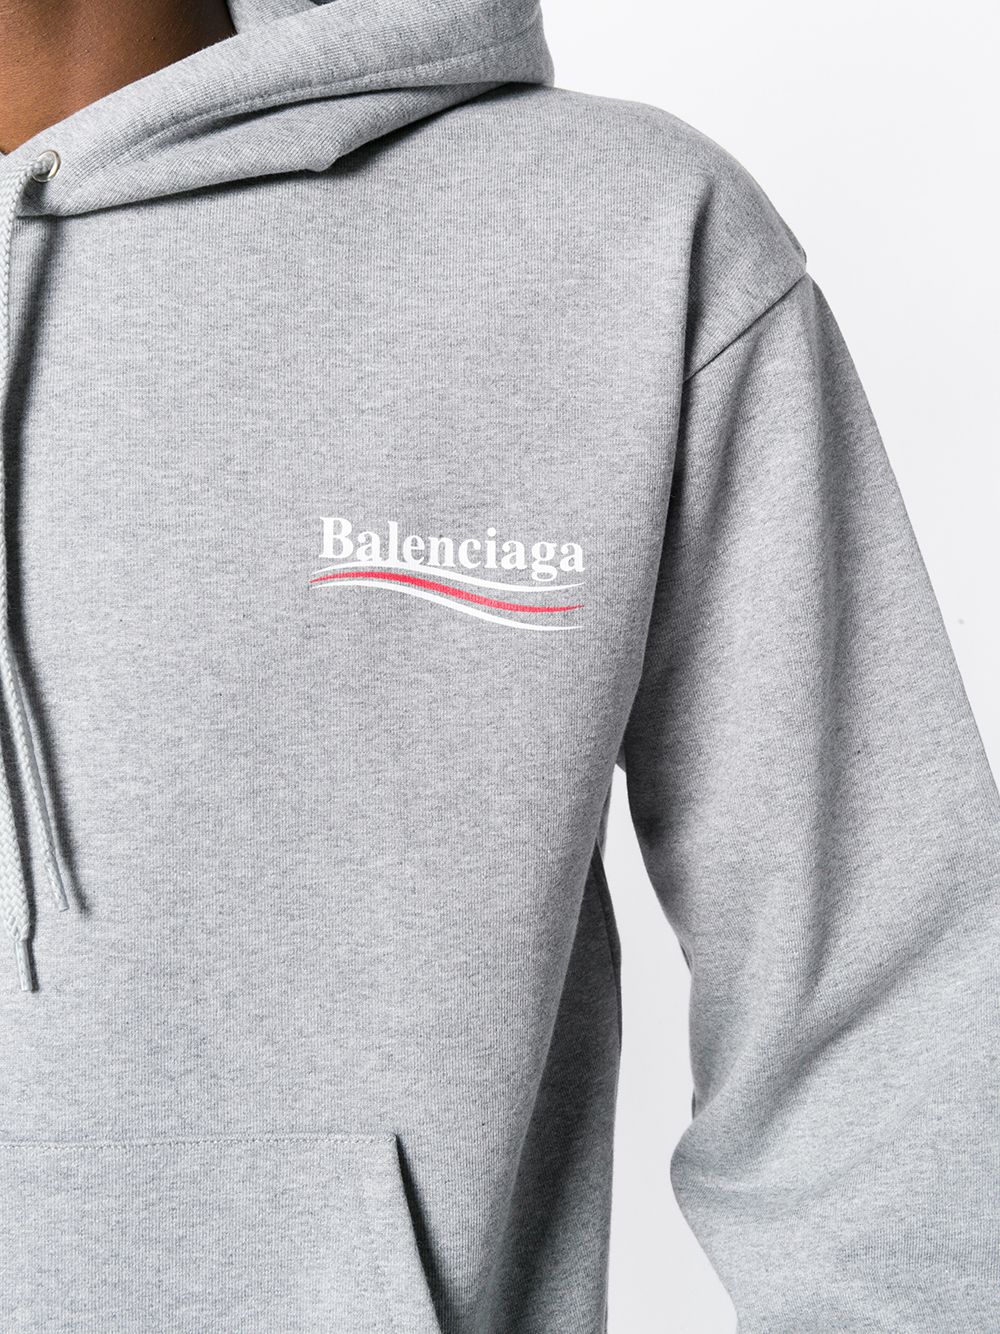 фото Balenciaga толстовка с капюшоном и логотипом